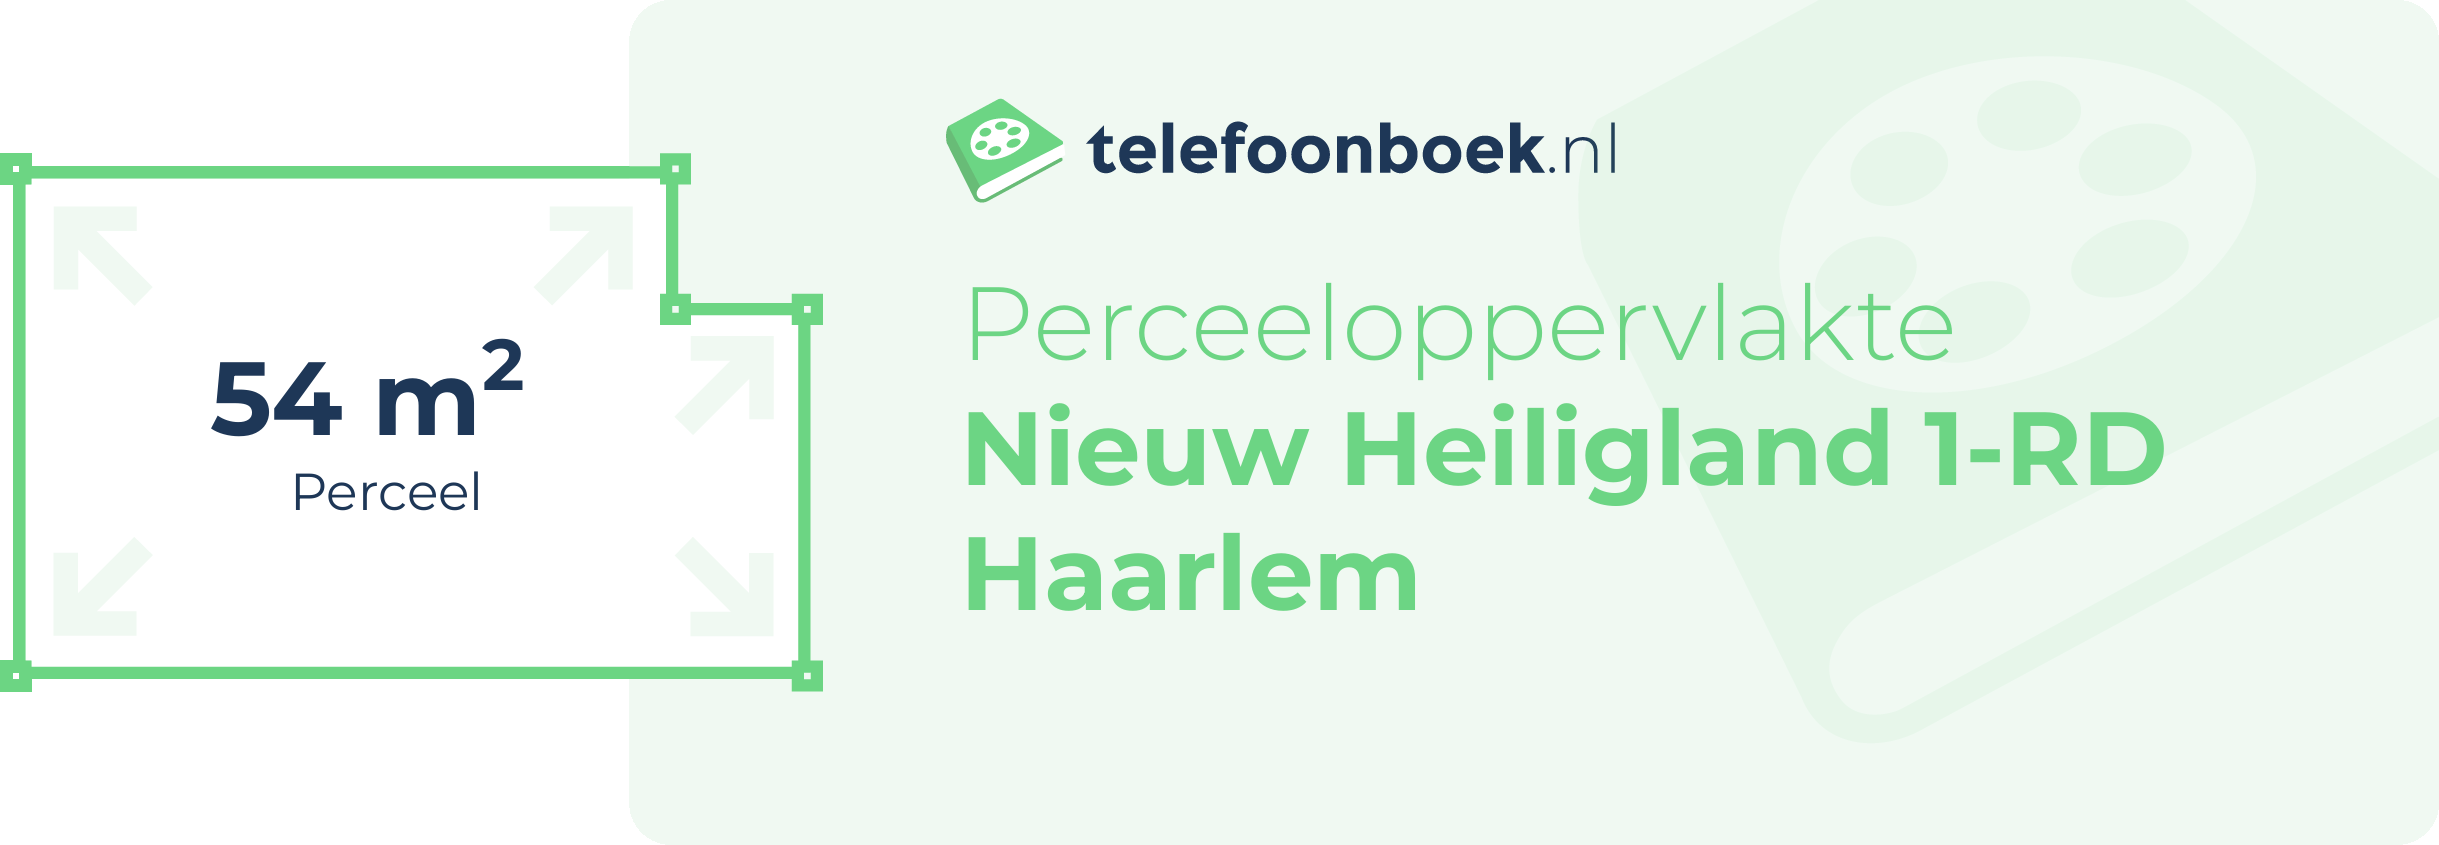 Perceeloppervlakte Nieuw Heiligland 1-RD Haarlem